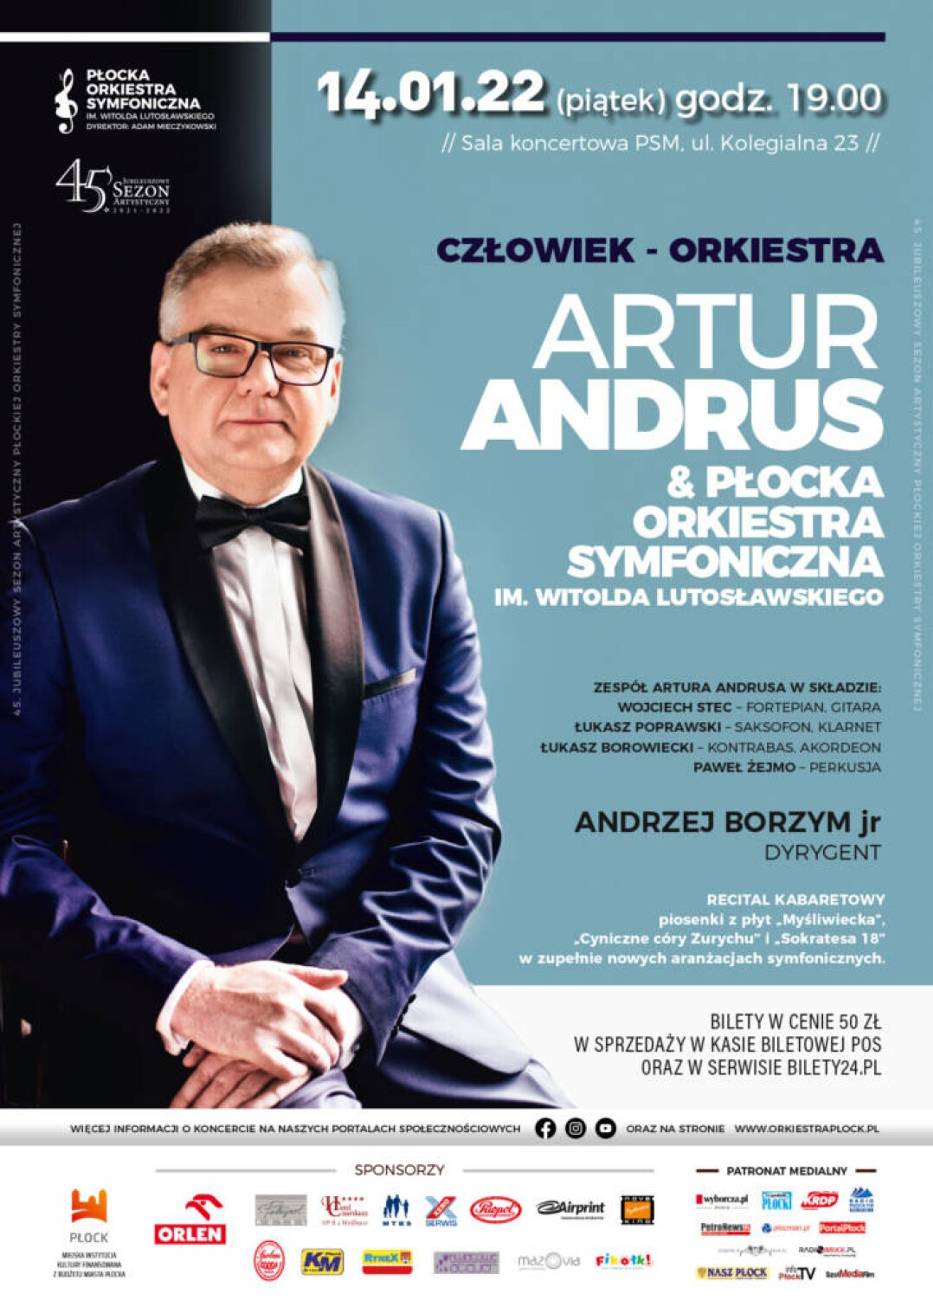 Artur Andrus wystąpi w Płocku. Płocka Orkiestra Symfoniczna zaprasza na recital